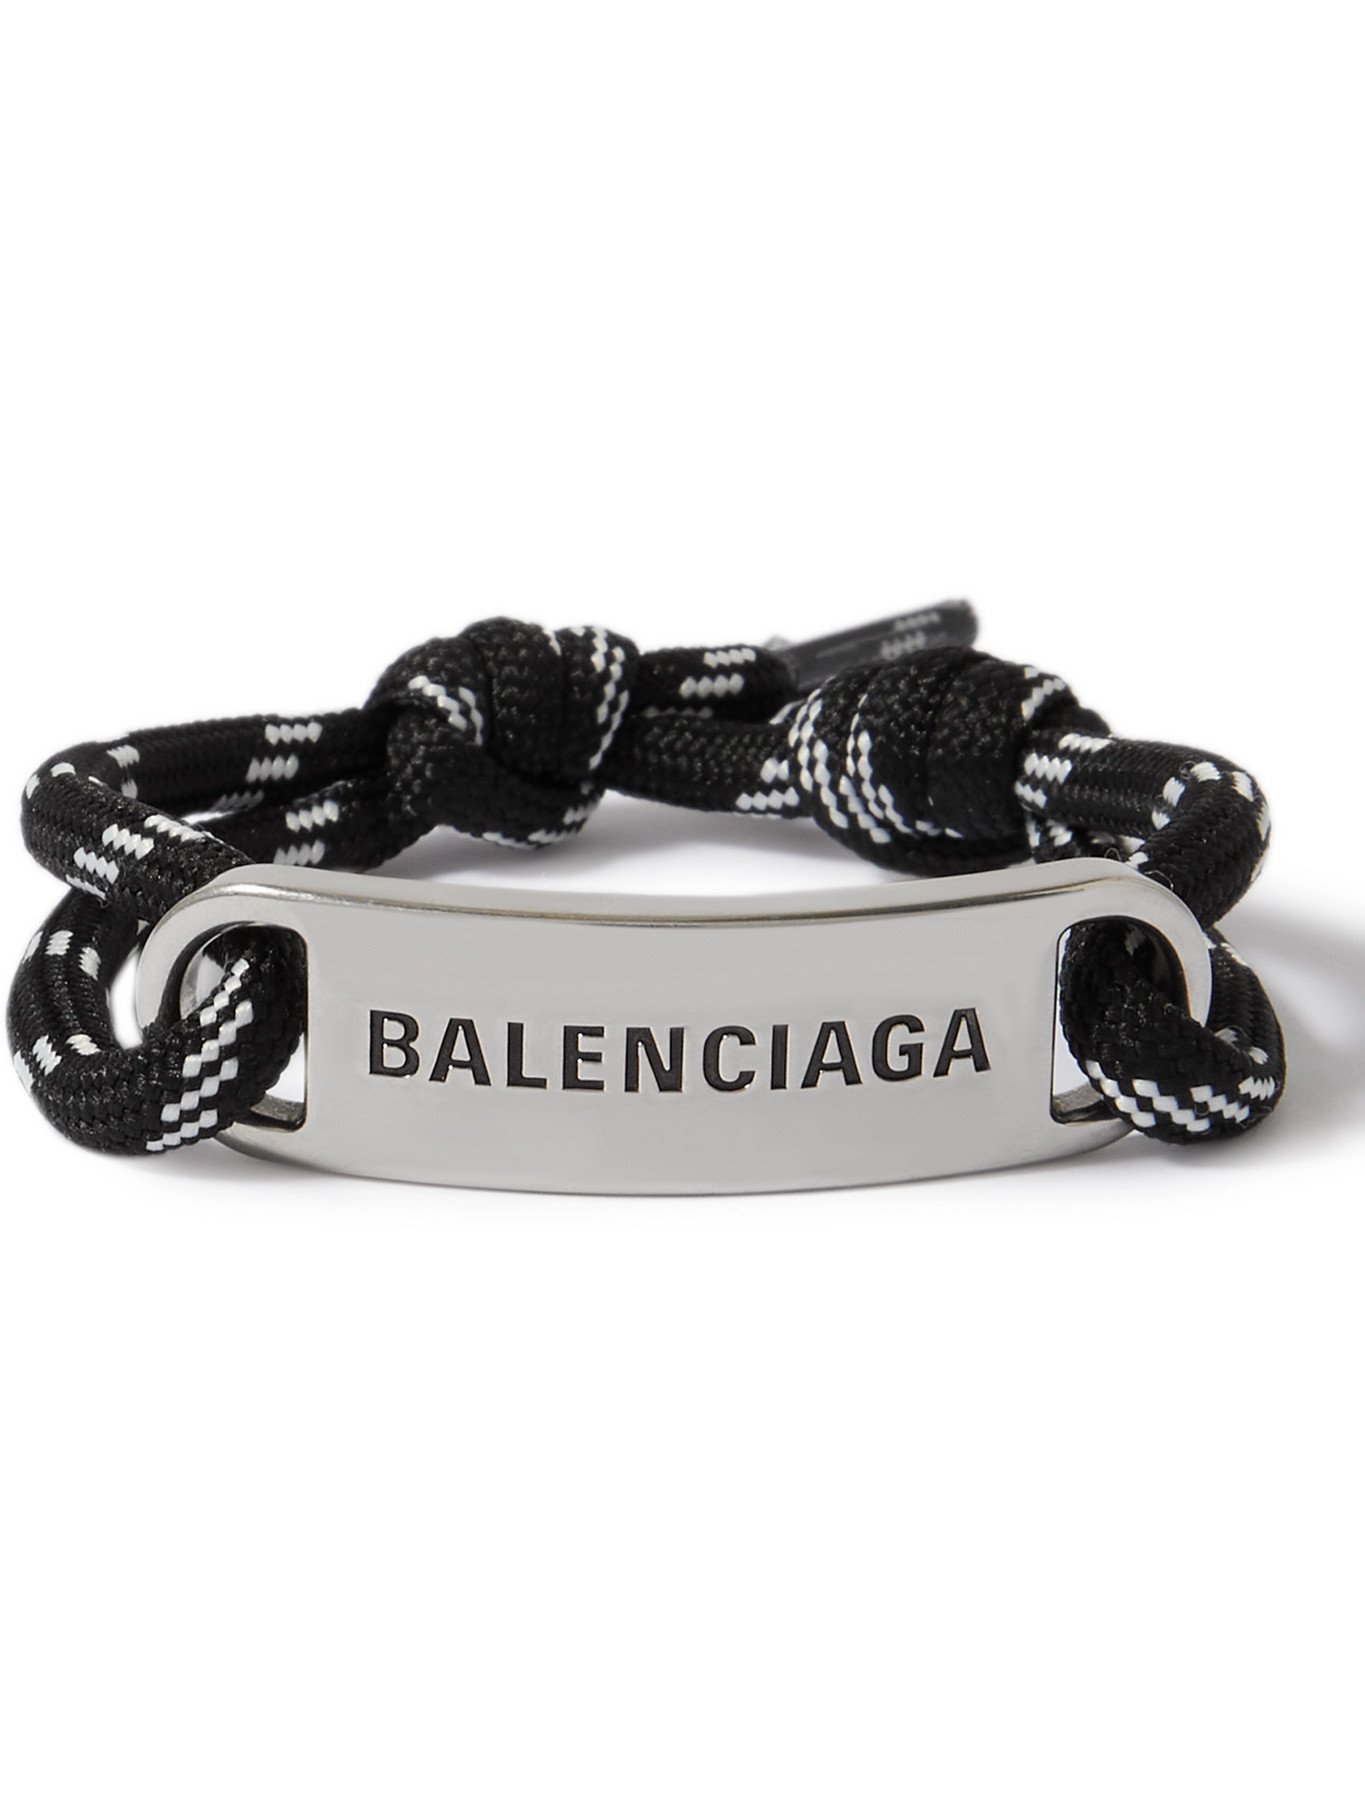 BALENCIAGA - Silver-Plated and Cord Bracelet - Black Balenciaga